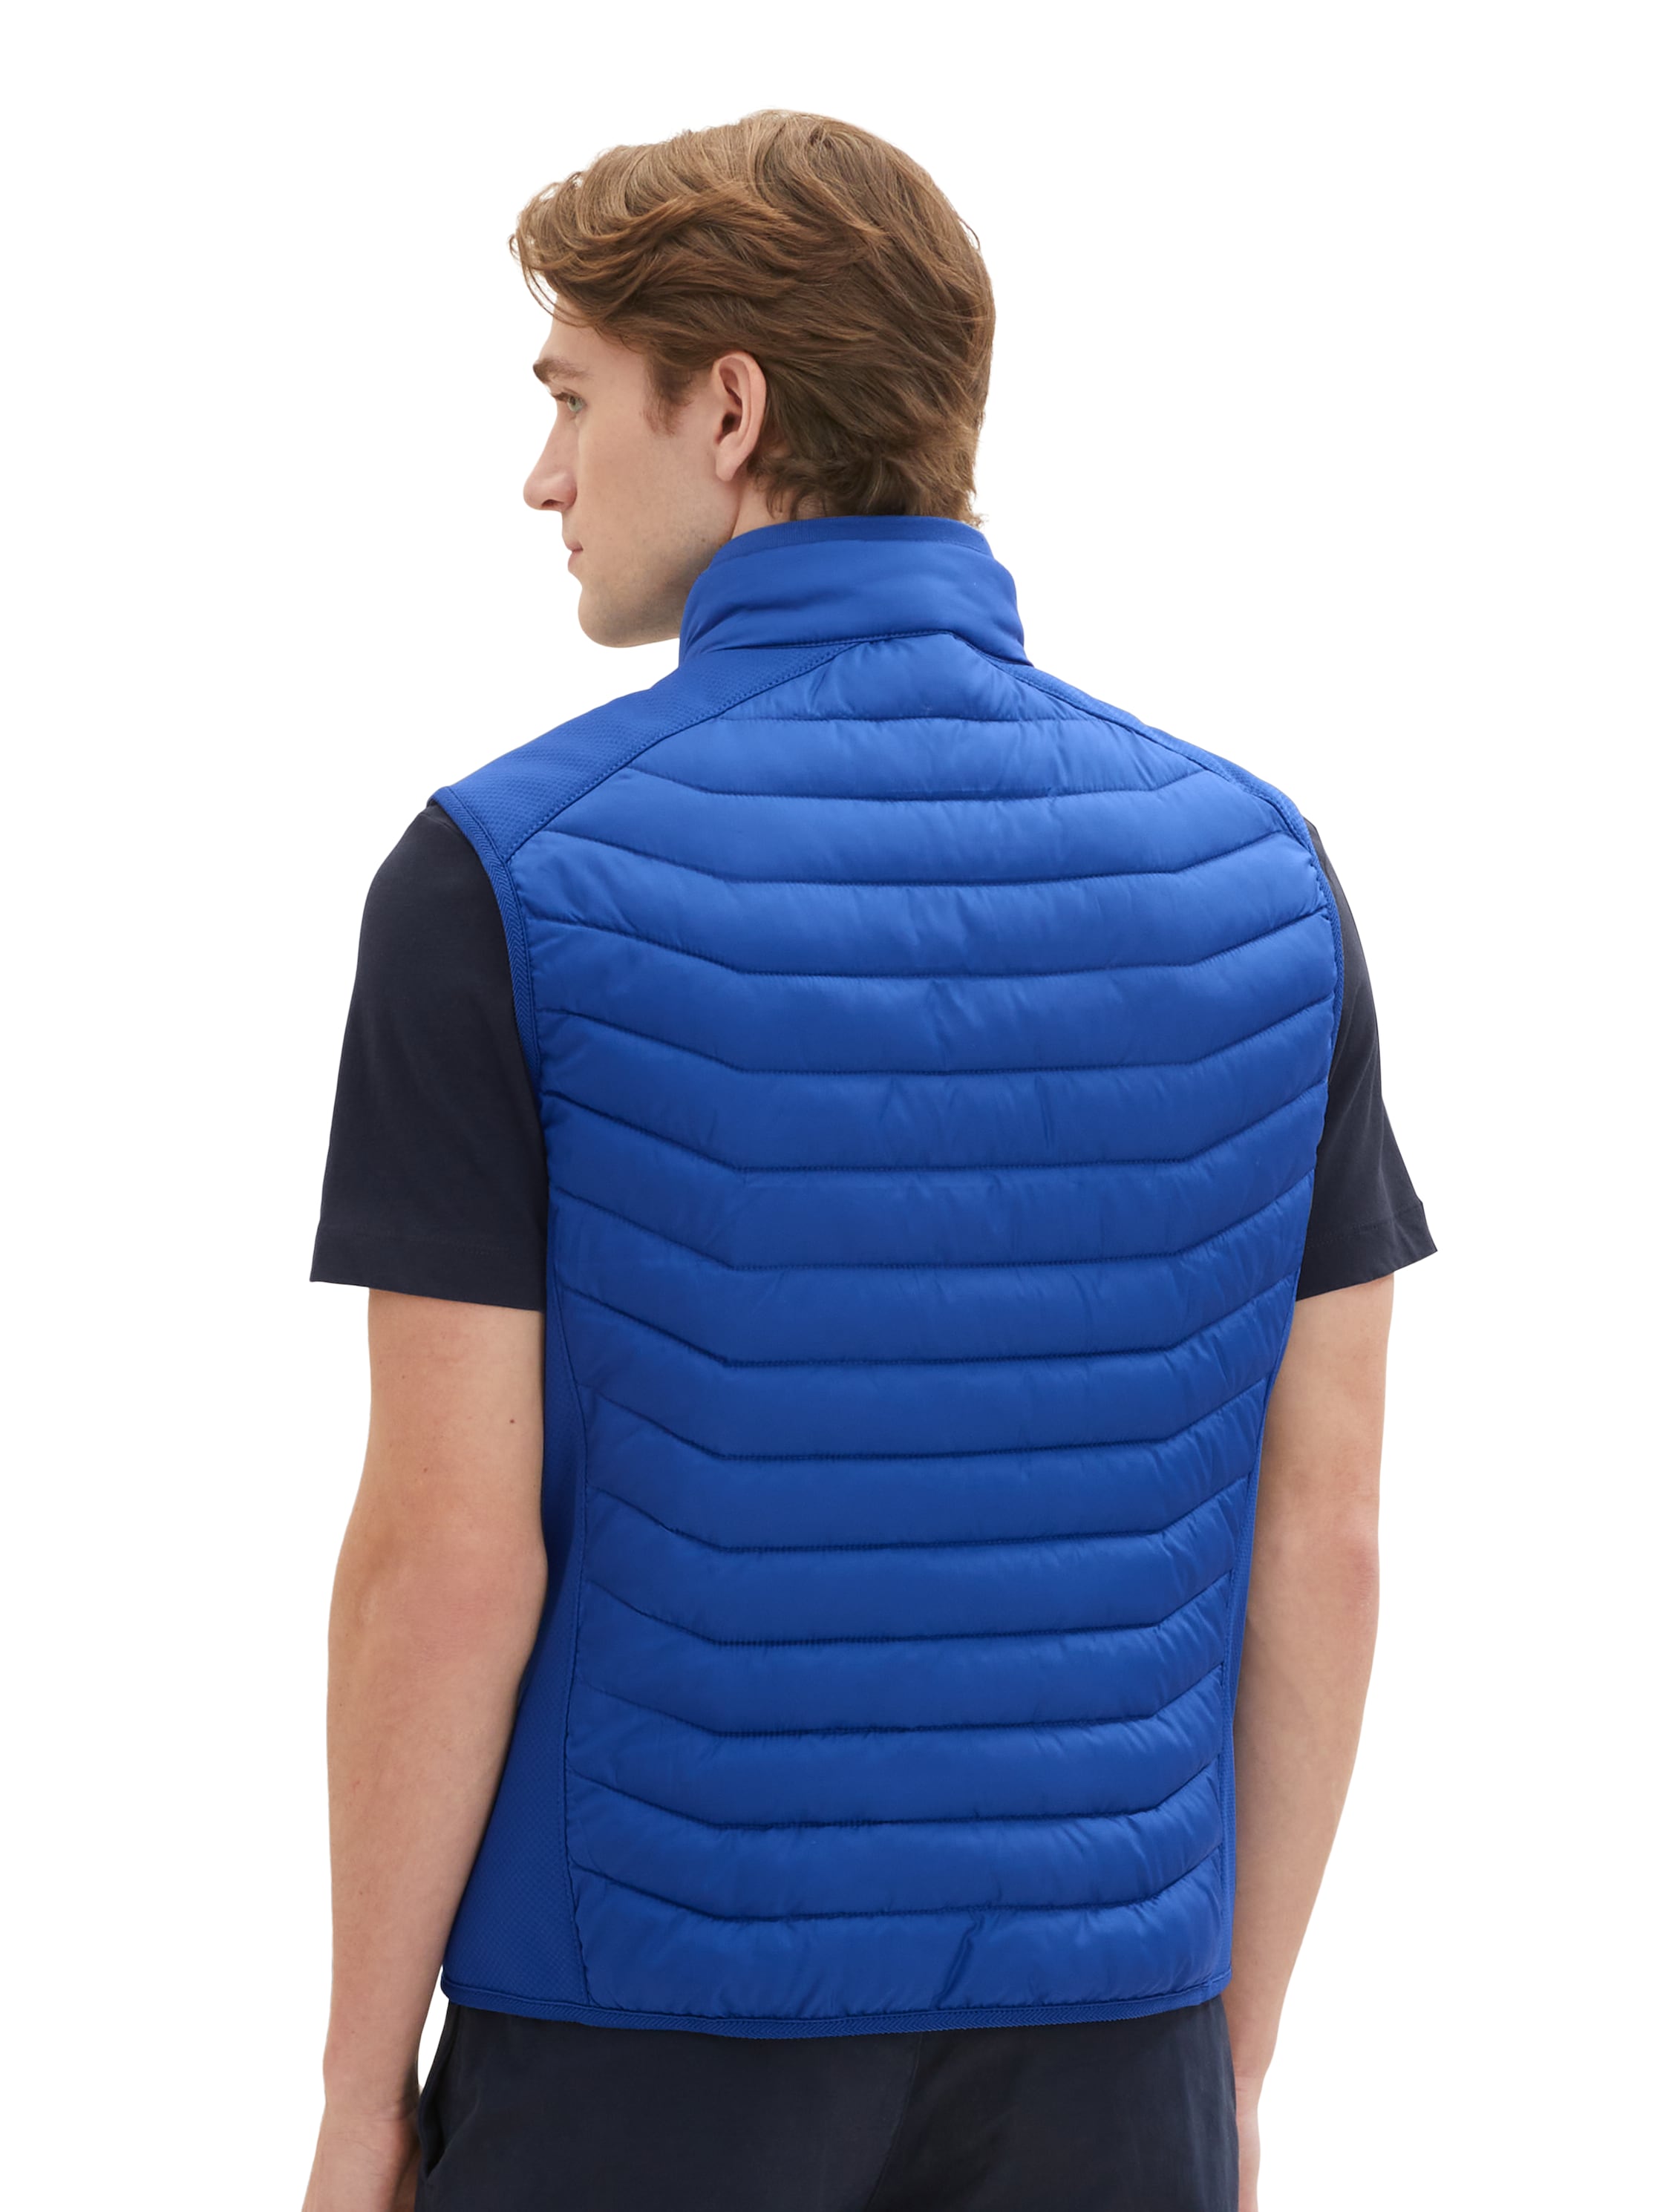 Tom Tailor Blue Hybrid Vest